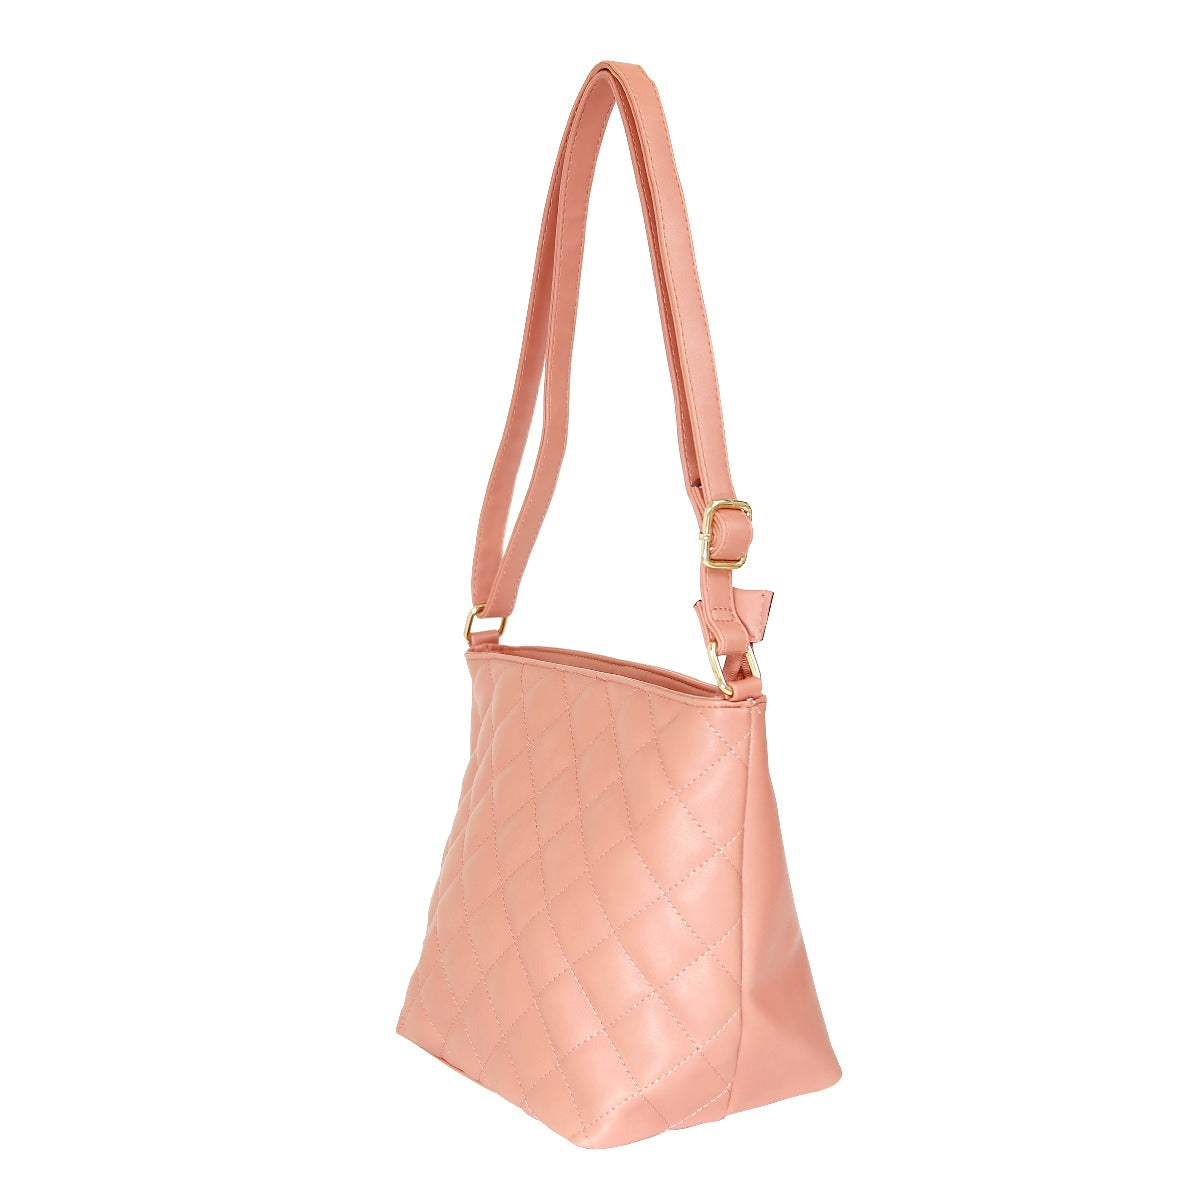 Bolsa [Lulu] tipo crossbody con diseño capitonado color rosa